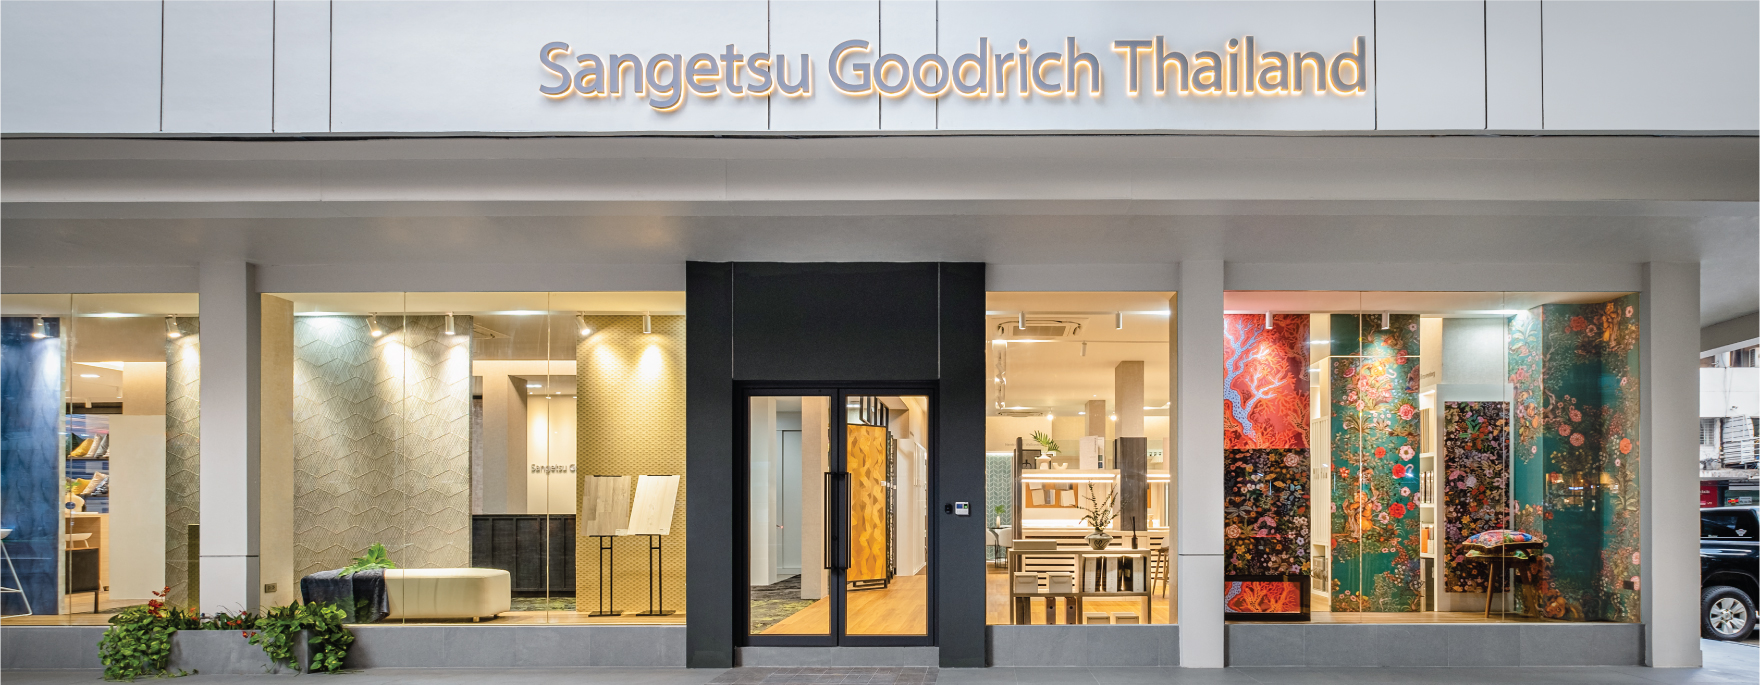 Sangetsu Goodrich Gallery Thailand